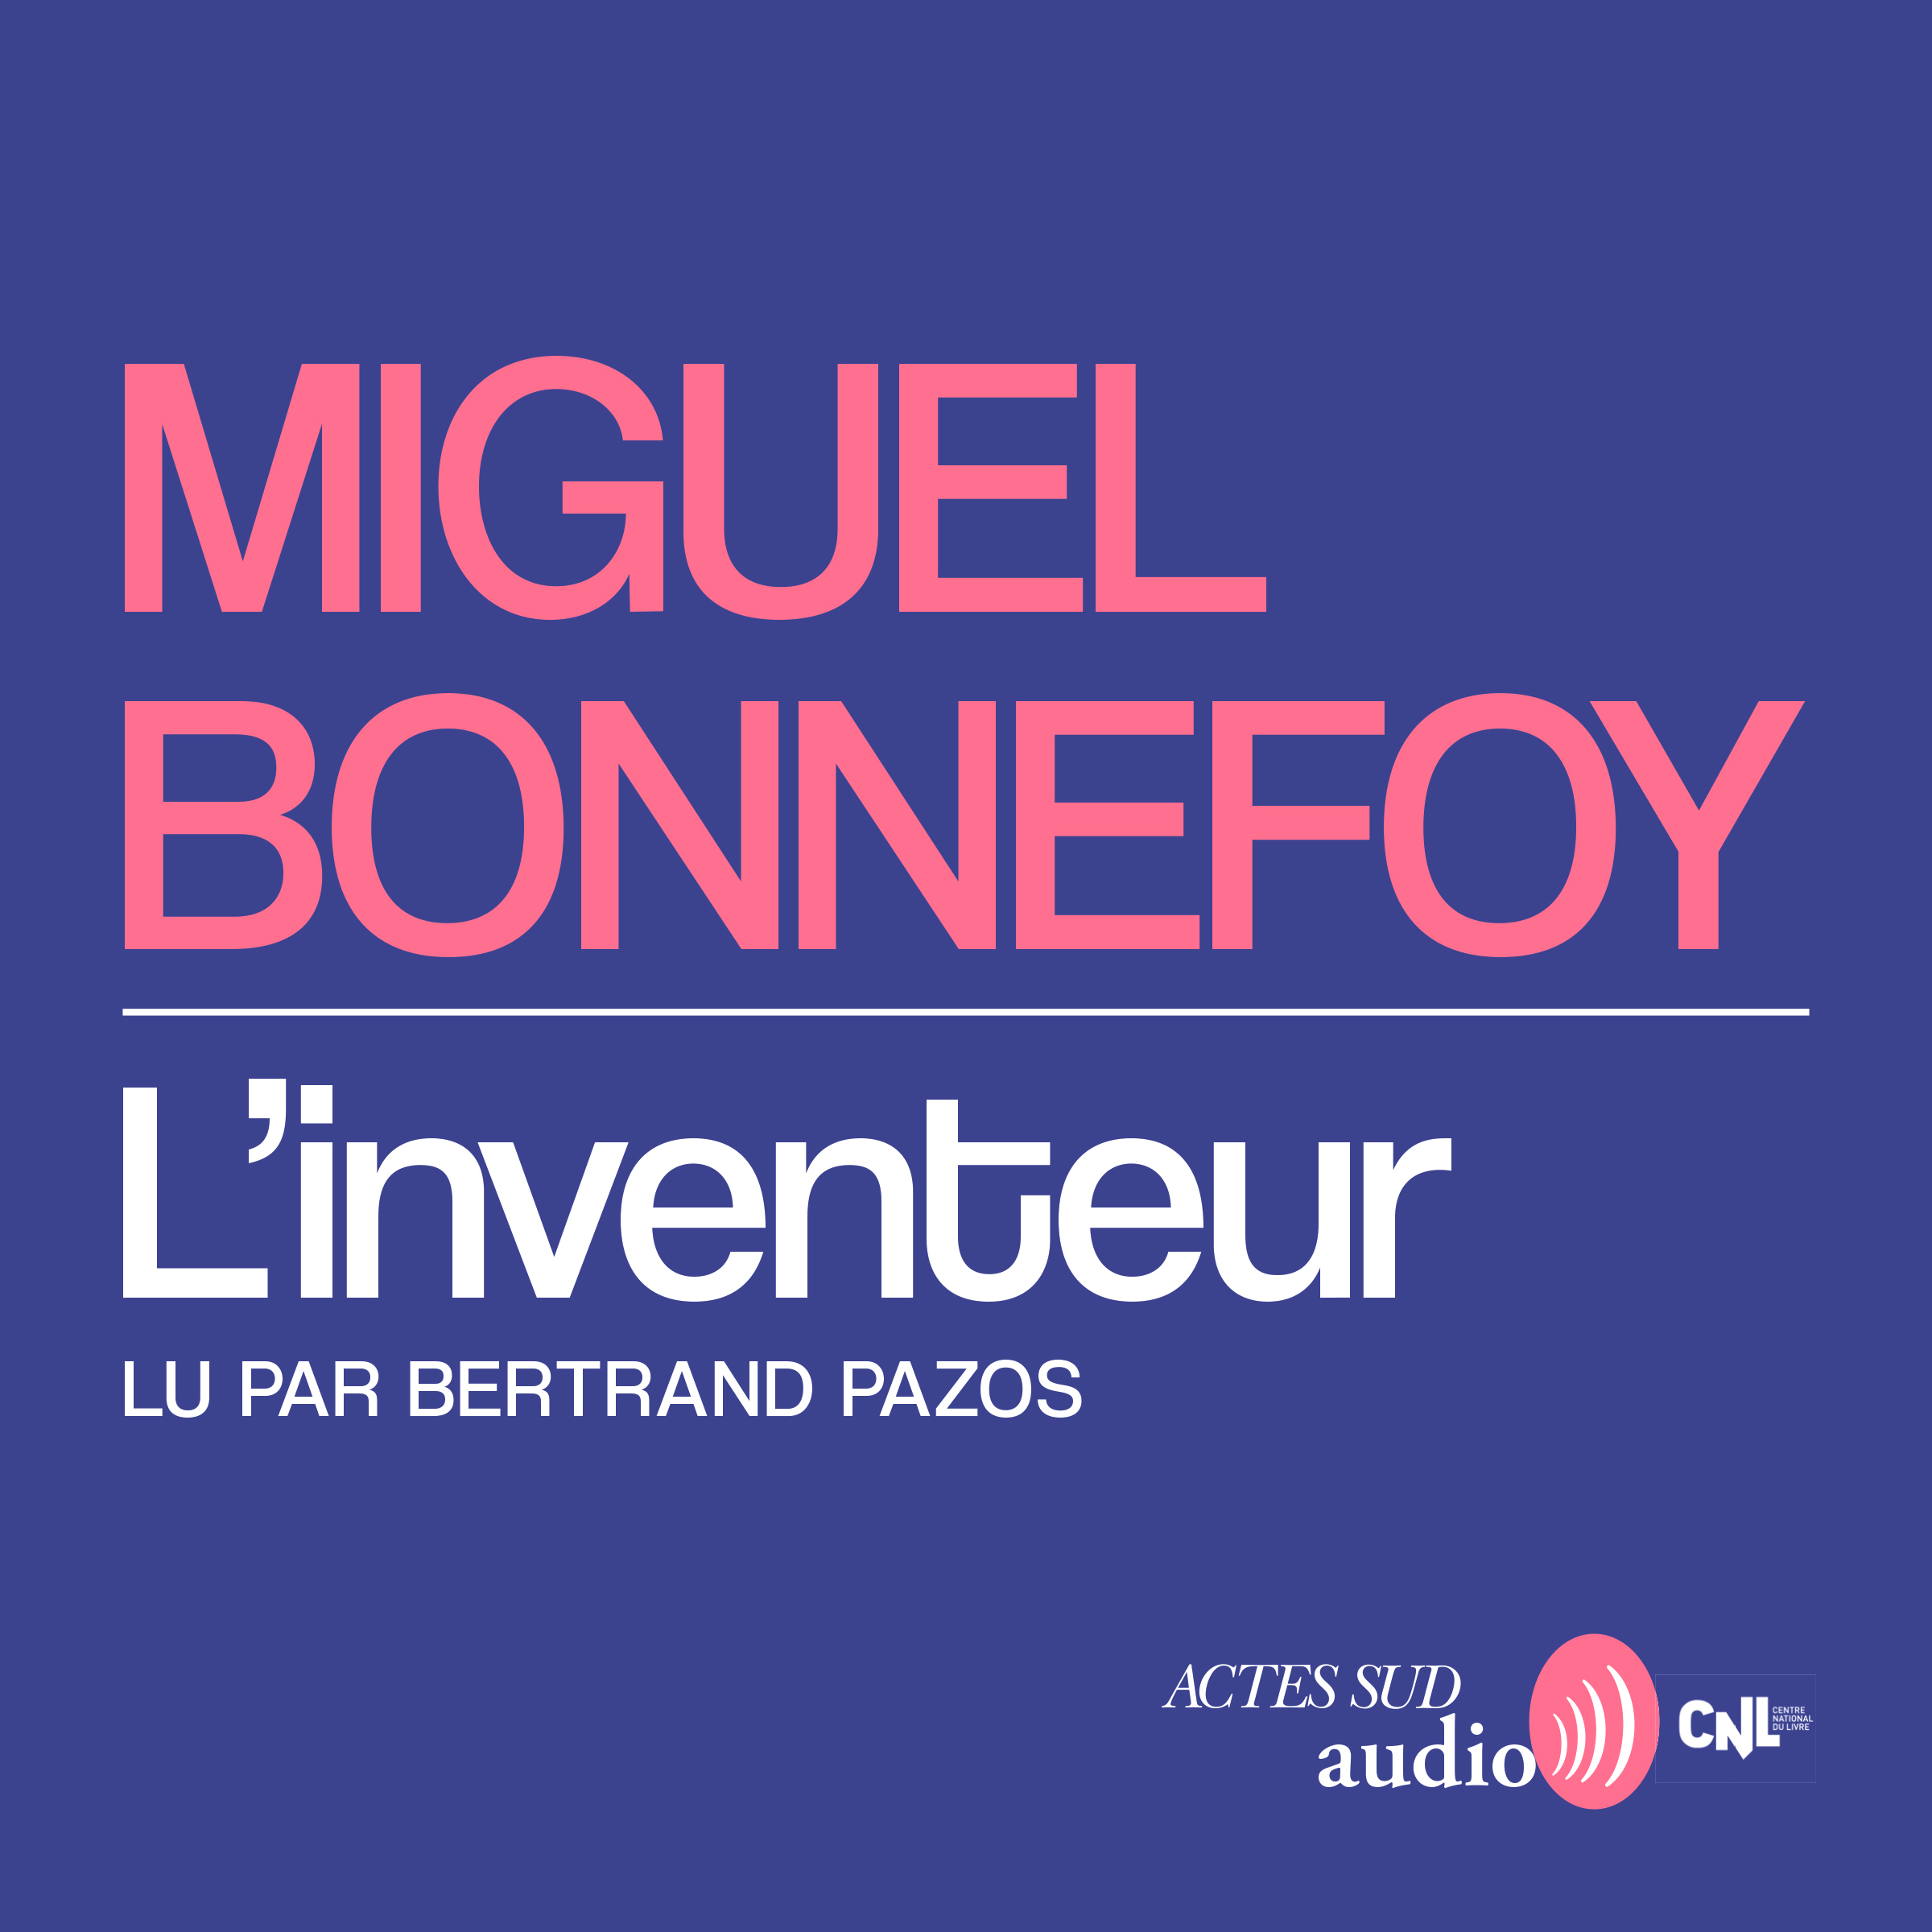 Couverture du livre audio L'inventeur De Miguel Bonnefoy 